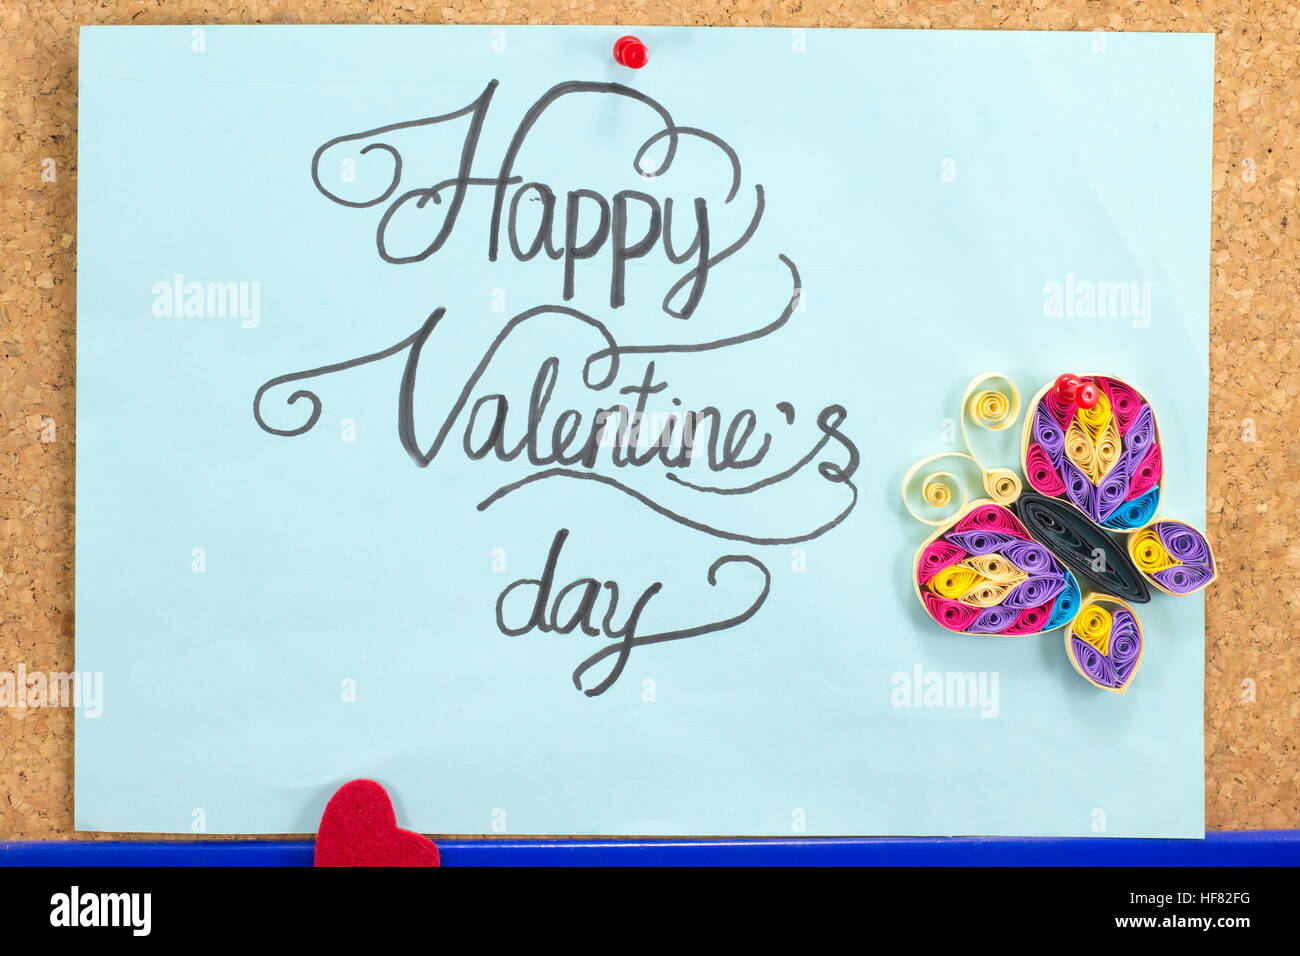 Happy Valentines Day carte papier calligraphie avec papillon Banque D'Images